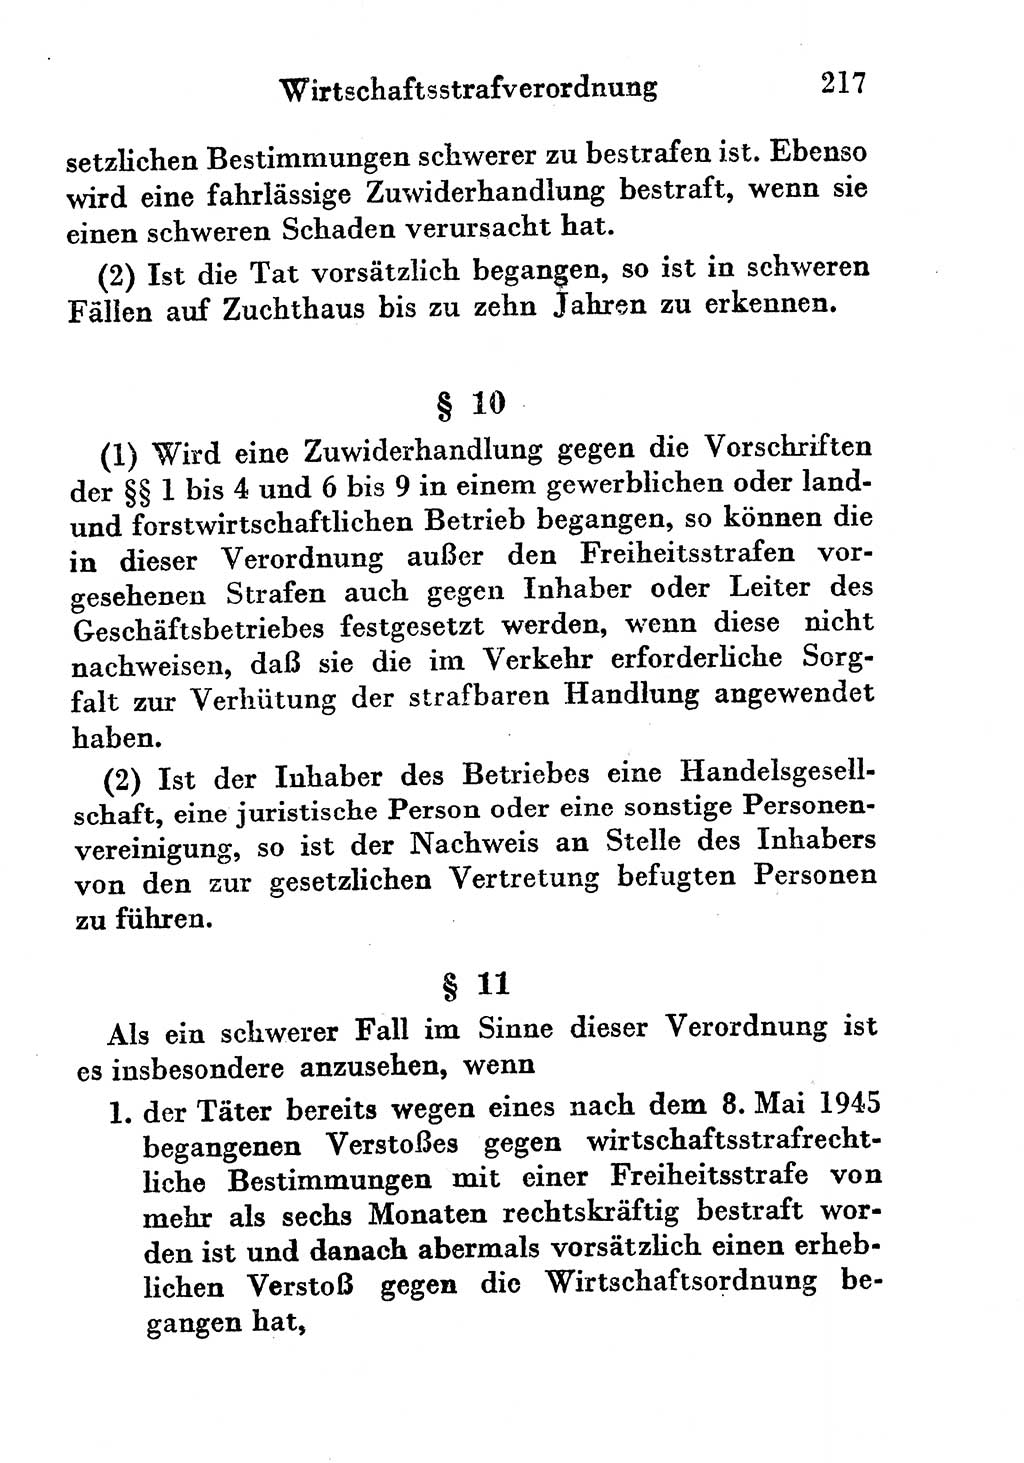 Strafgesetzbuch (StGB) und andere Strafgesetze [Deutsche Demokratische Republik (DDR)] 1956, Seite 217 (StGB Strafges. DDR 1956, S. 217)